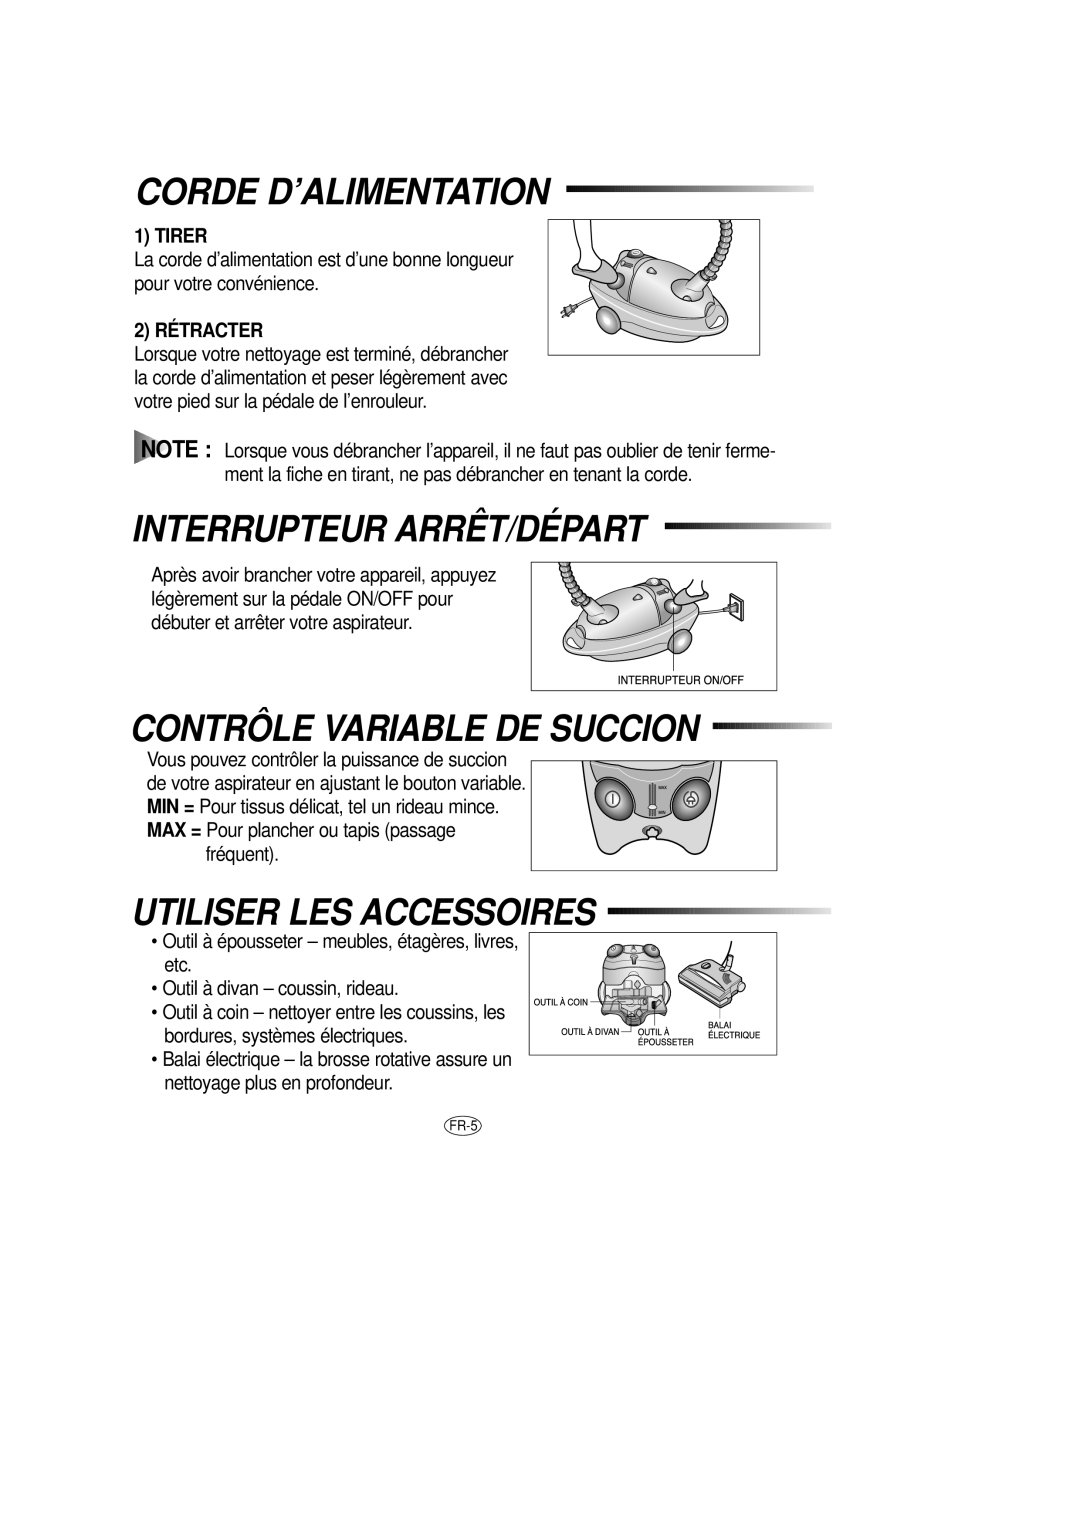 Samsung DJ68-00079J Corde D’Alimentation, Interrupteur Arrêt/Départ, Contrôle Variable De Succion, Tirer, 2 RÉTRACTER 